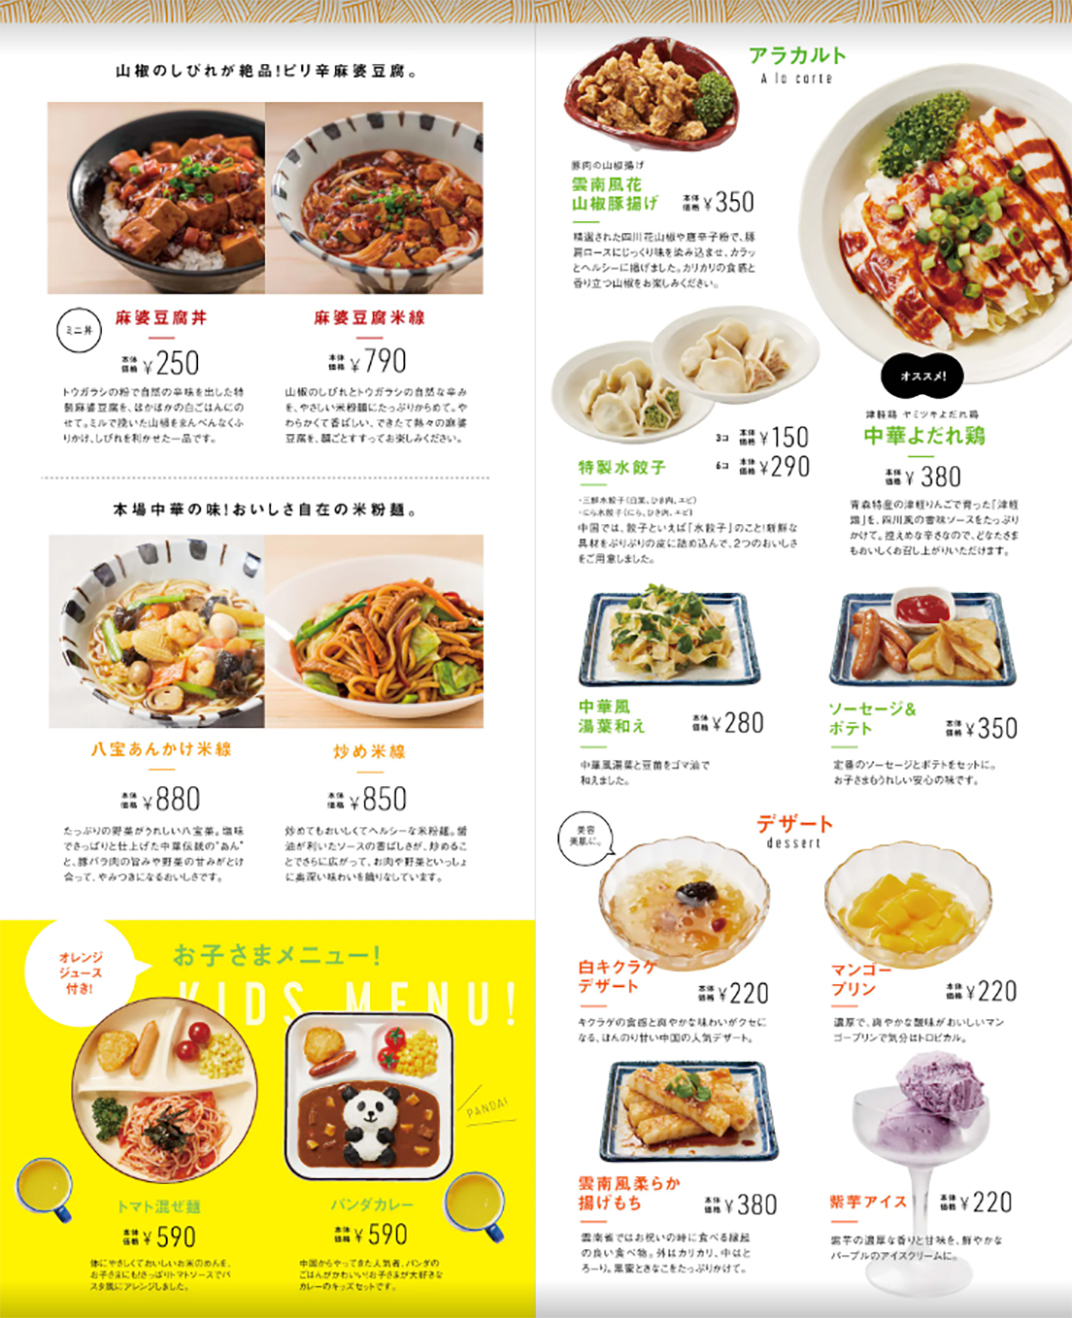 几个不错的餐厅菜单设计 北京 上海 珠海 广州 武汉 杭州 佛山 香港 澳门 logo设计 vi设计 空间设计